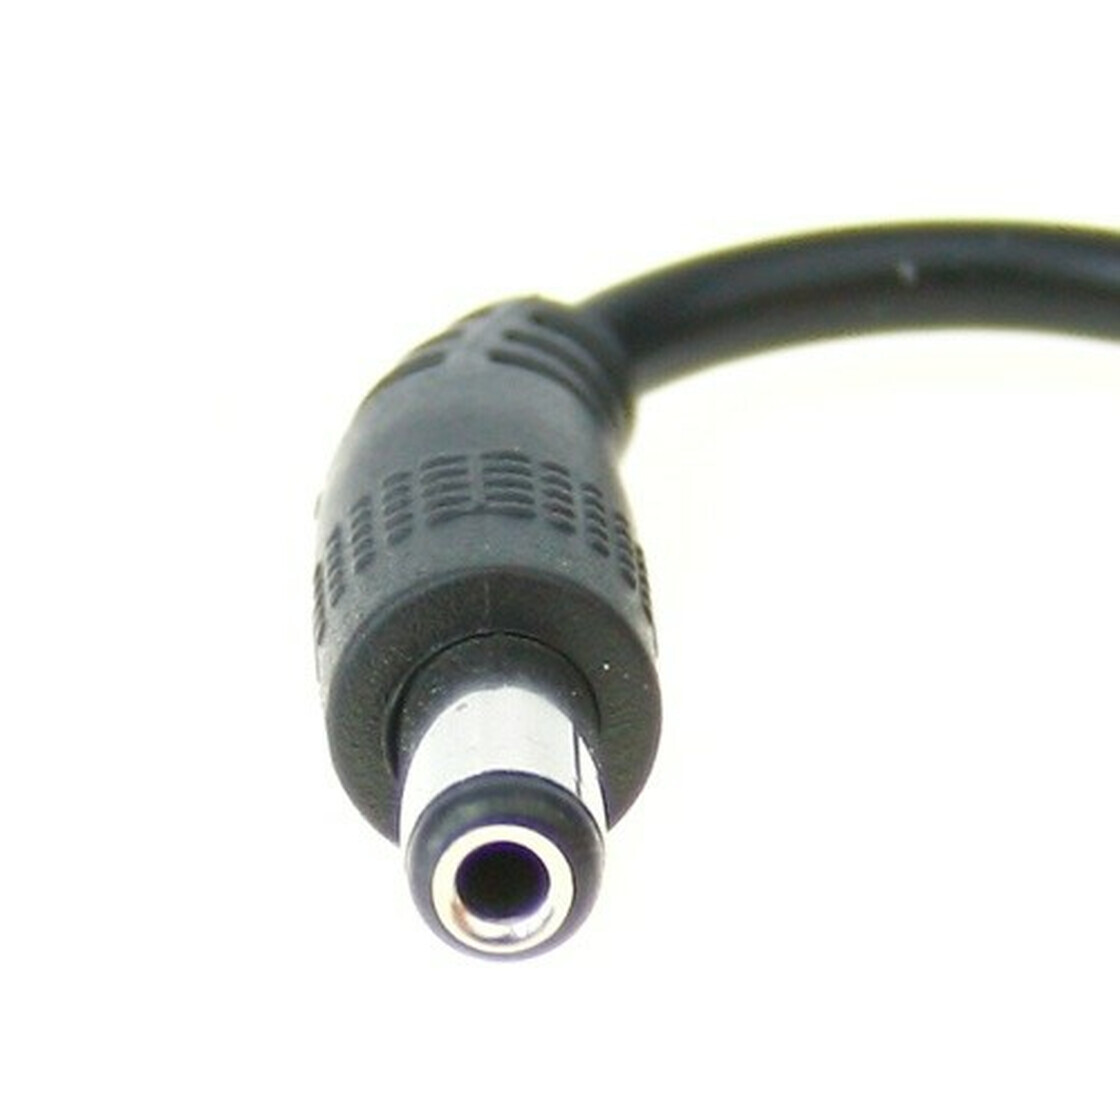 Anschluss Anschlusskabel, Netzteil für 230V LED Streifen 13mm SMD 505, 5,99  €